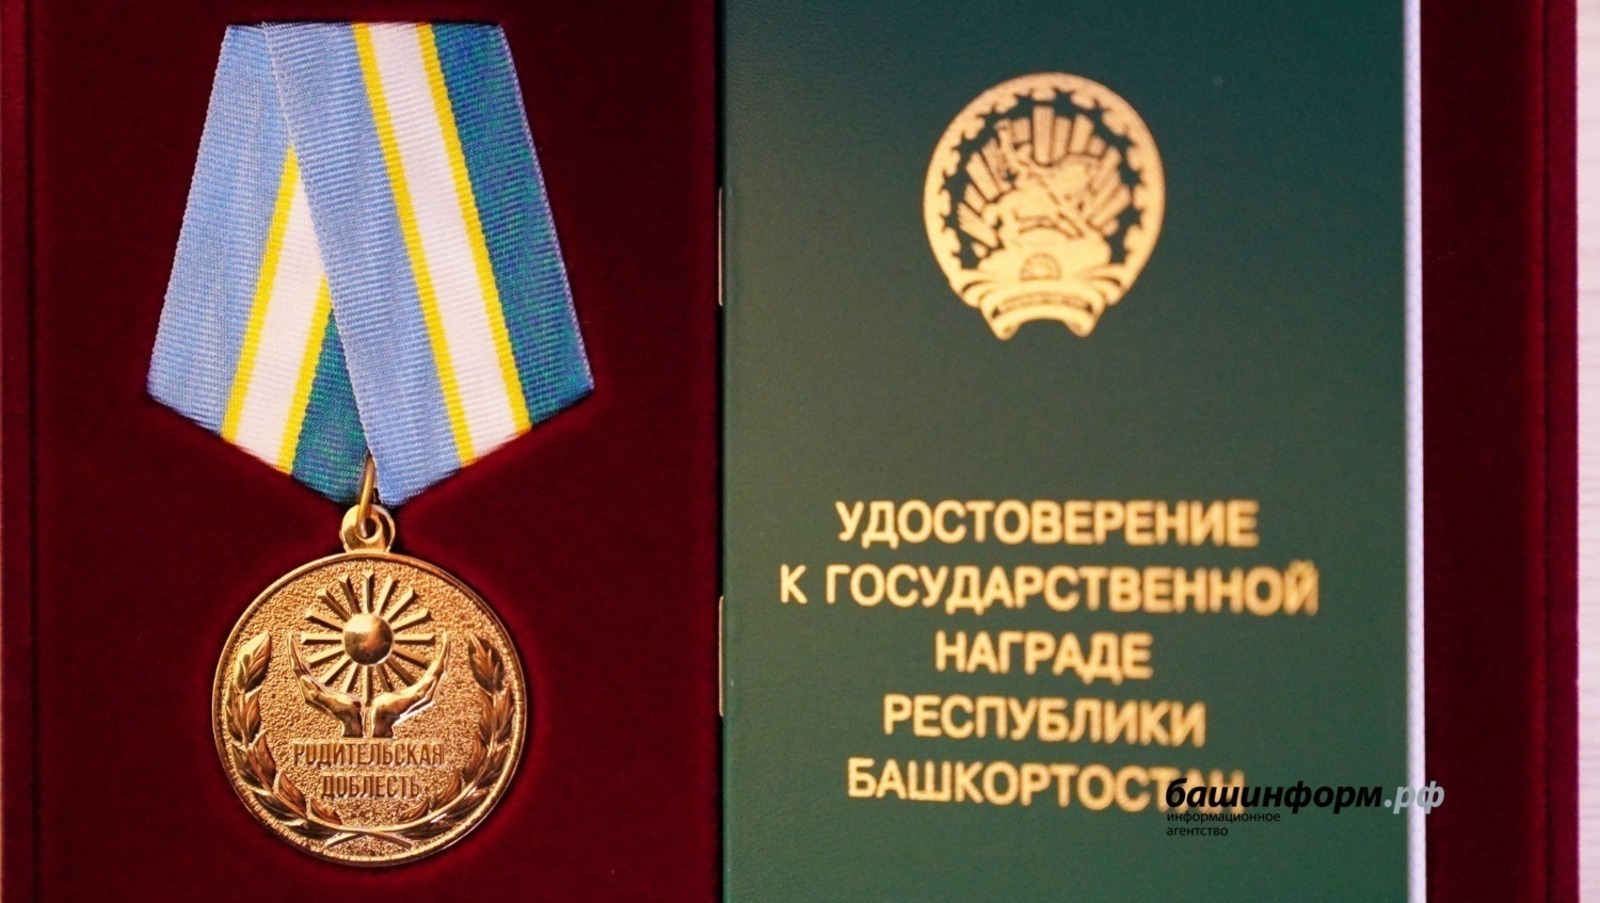 Список получателей медали «Родительская доблесть» в башкирии расширился